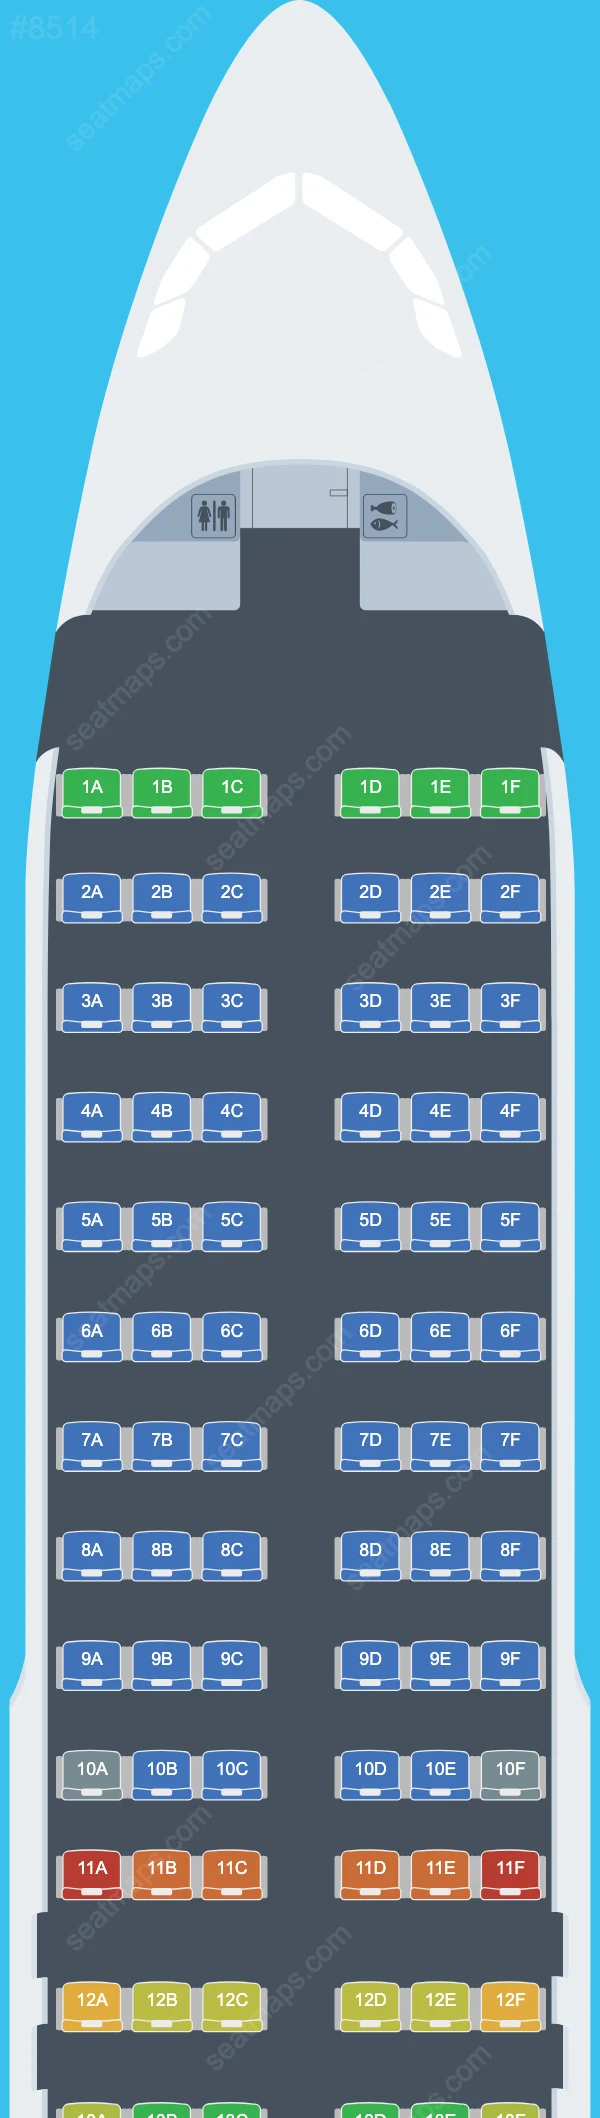 Air Travel Airbus A320 Seat Maps A320-200 V.2